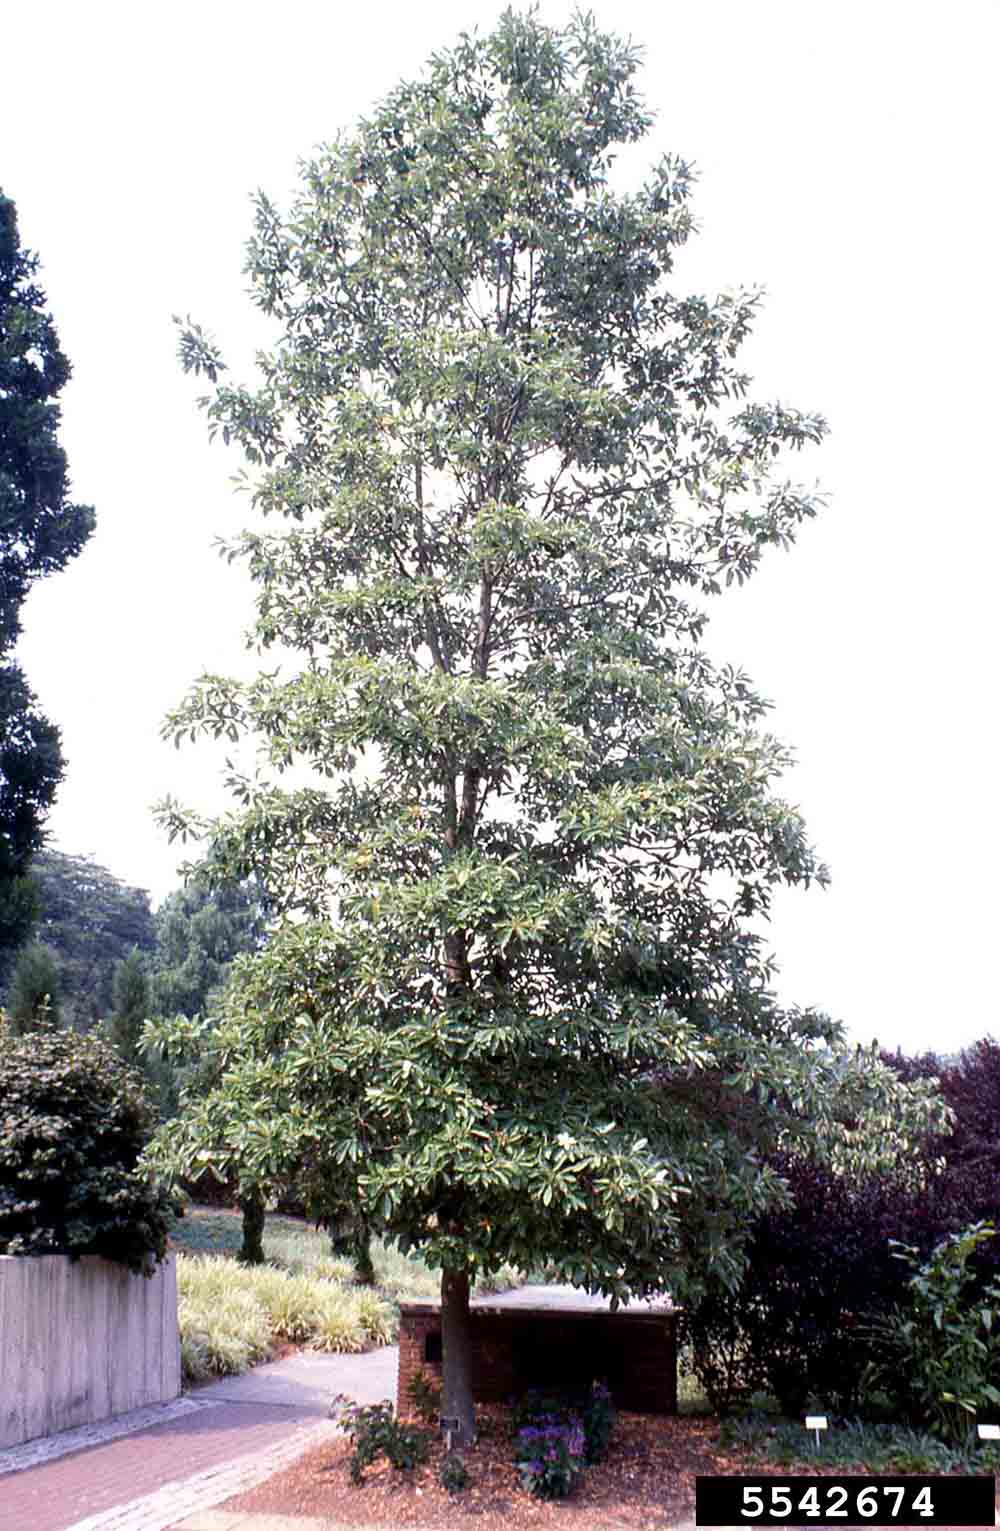 Sweetbay magnolia tree